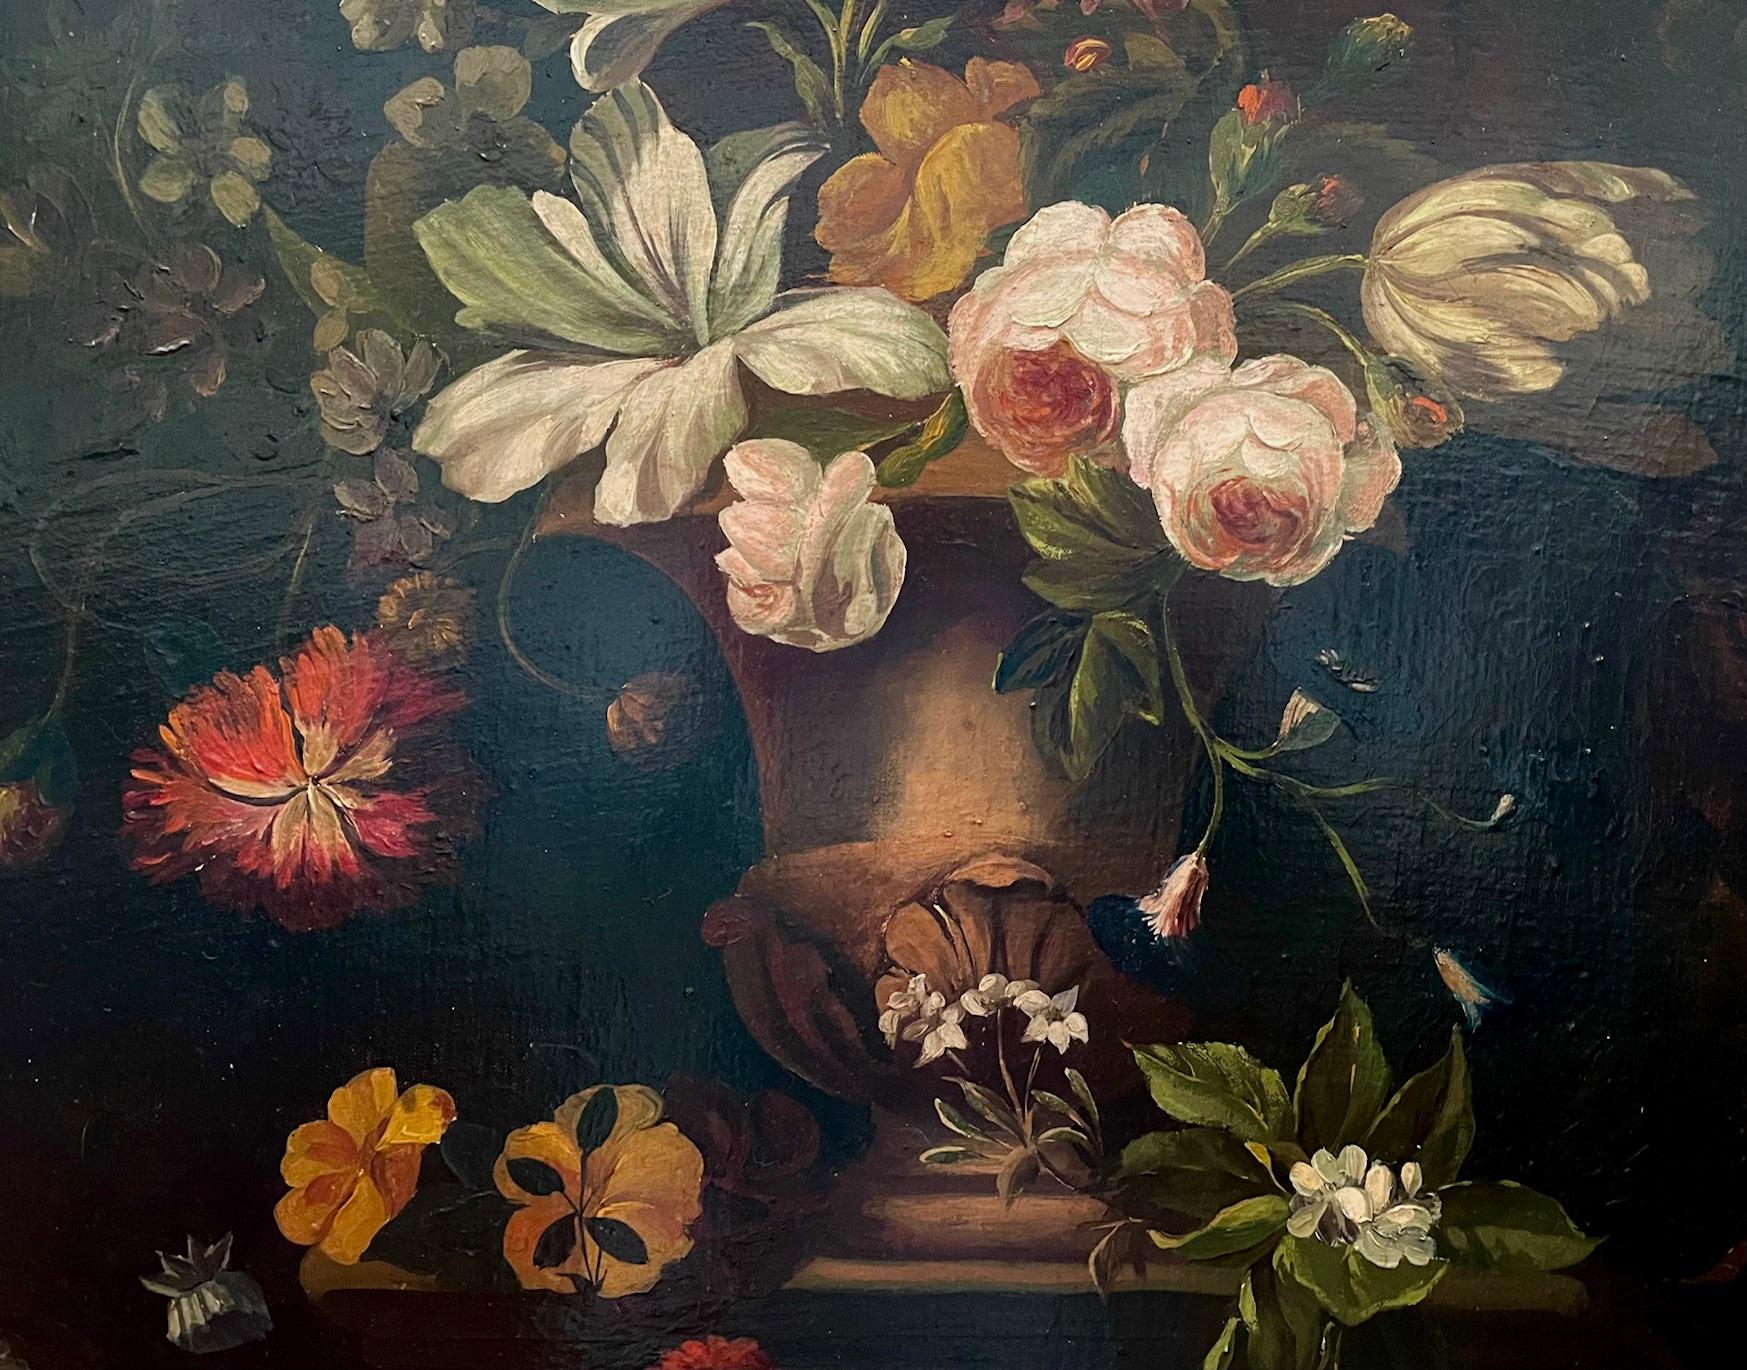  Floral mit Urne ist in einem klassischen holländischen Stil aus dem 17. Die leuchtenden Blumen drapieren die Urne in Weiß, Crimson und Rosa und heben sich von dem dunkleren Laub und den Blumen auf dem dunklen Hintergrund ab. 

Der Künstler ist